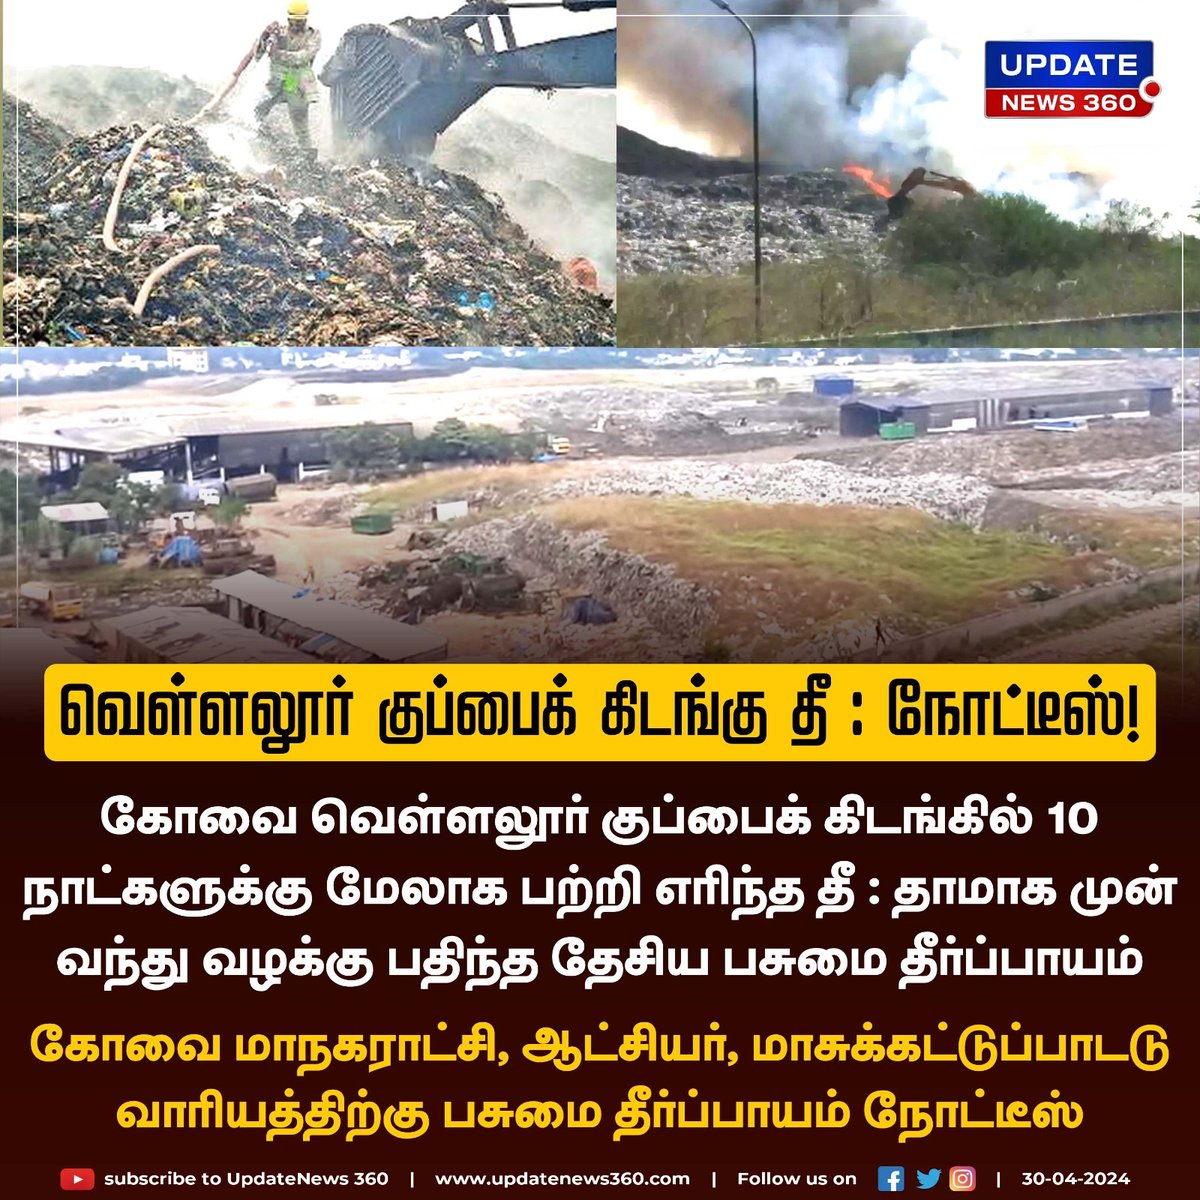 பற்றி எரியும் வெள்ளலூர் குப்பைக் கிடங்கு : கோவை மாநகராட்சி, ஆட்சியருக்கு நோட்டீஸ்!!

#UpdateNews | #Coimbatore | #CoimbatoreCorporation | #Vellalore | #VellaloreDumpYard | #FireAccident | #TamilNews | #Updatenews360